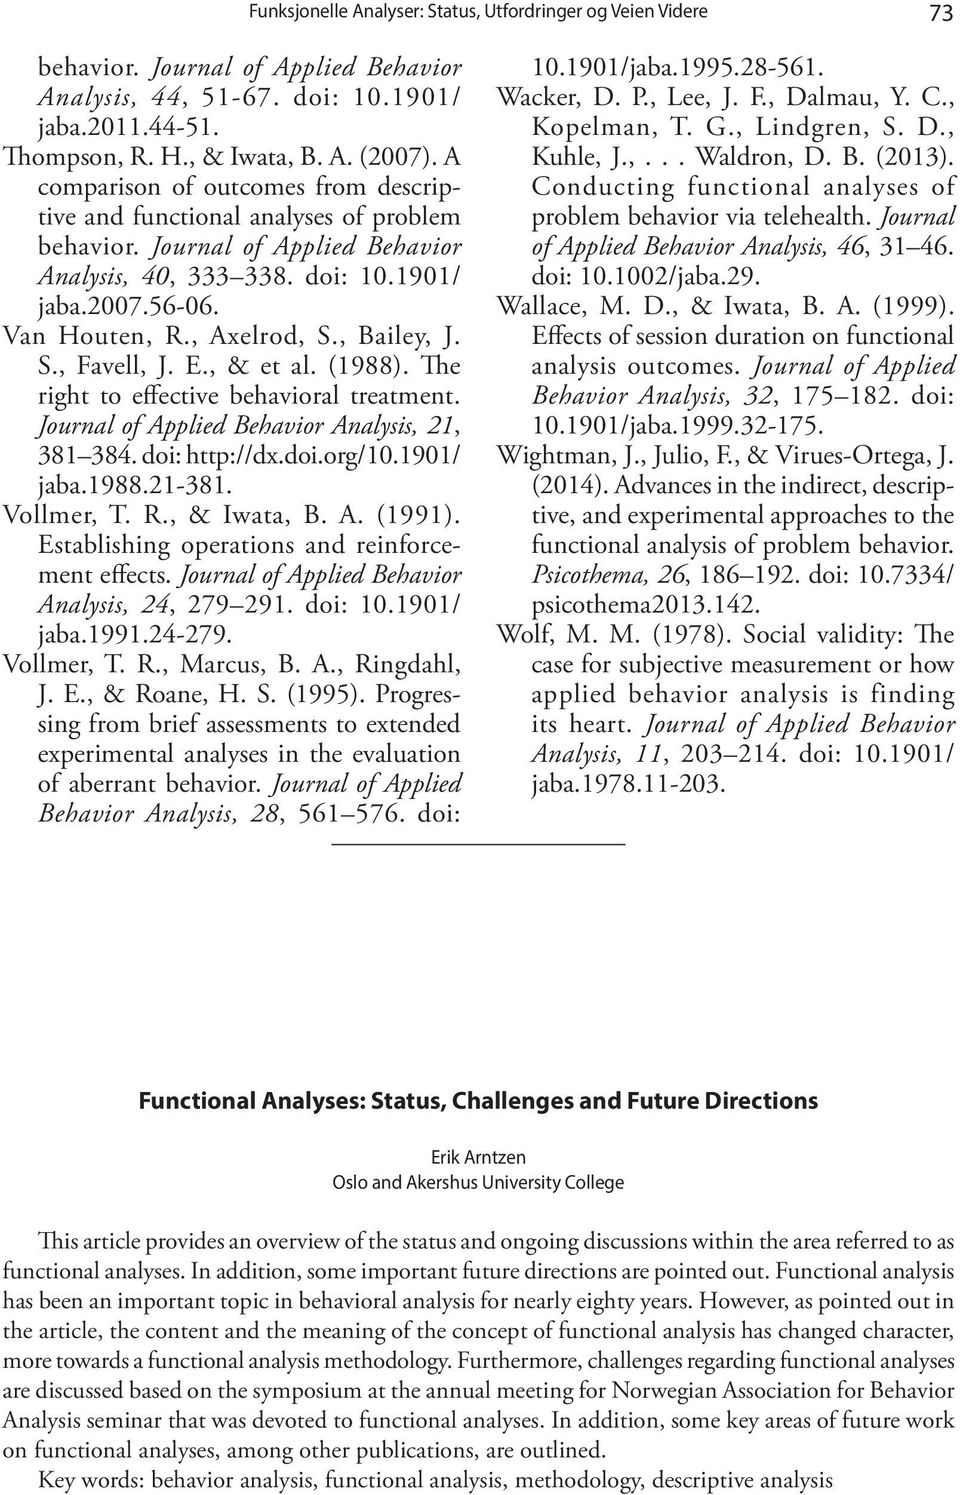 , Bailey, J. S., Favell, J. E., & et al. (1988). The right to effective behavioral treatment. Journal of Applied Behavior Analysis, 21, 381 384. doi: http://dx.doi.org/10.1901/ jaba.1988.21-381.